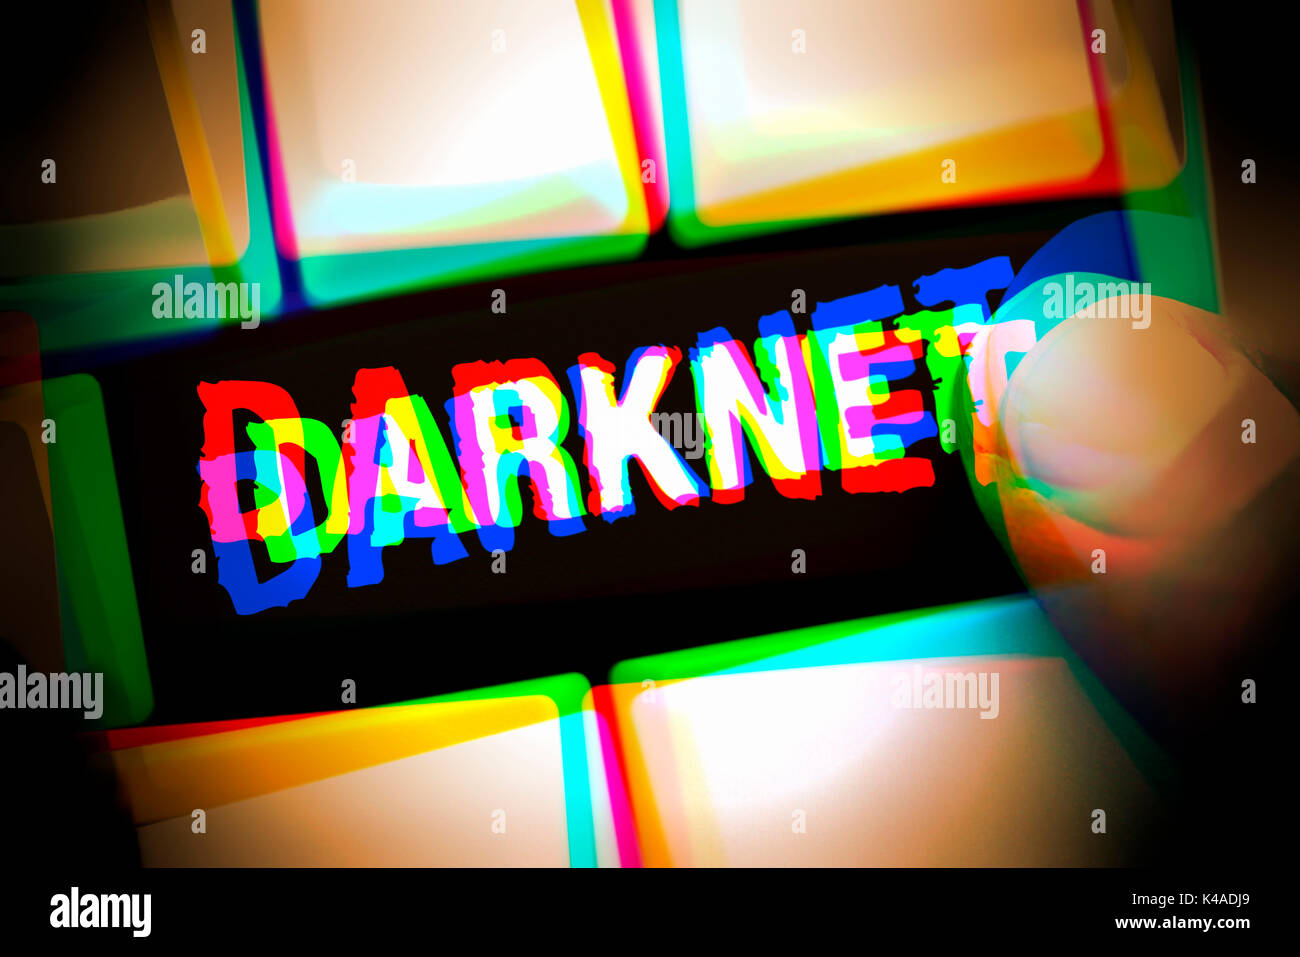 darknet image